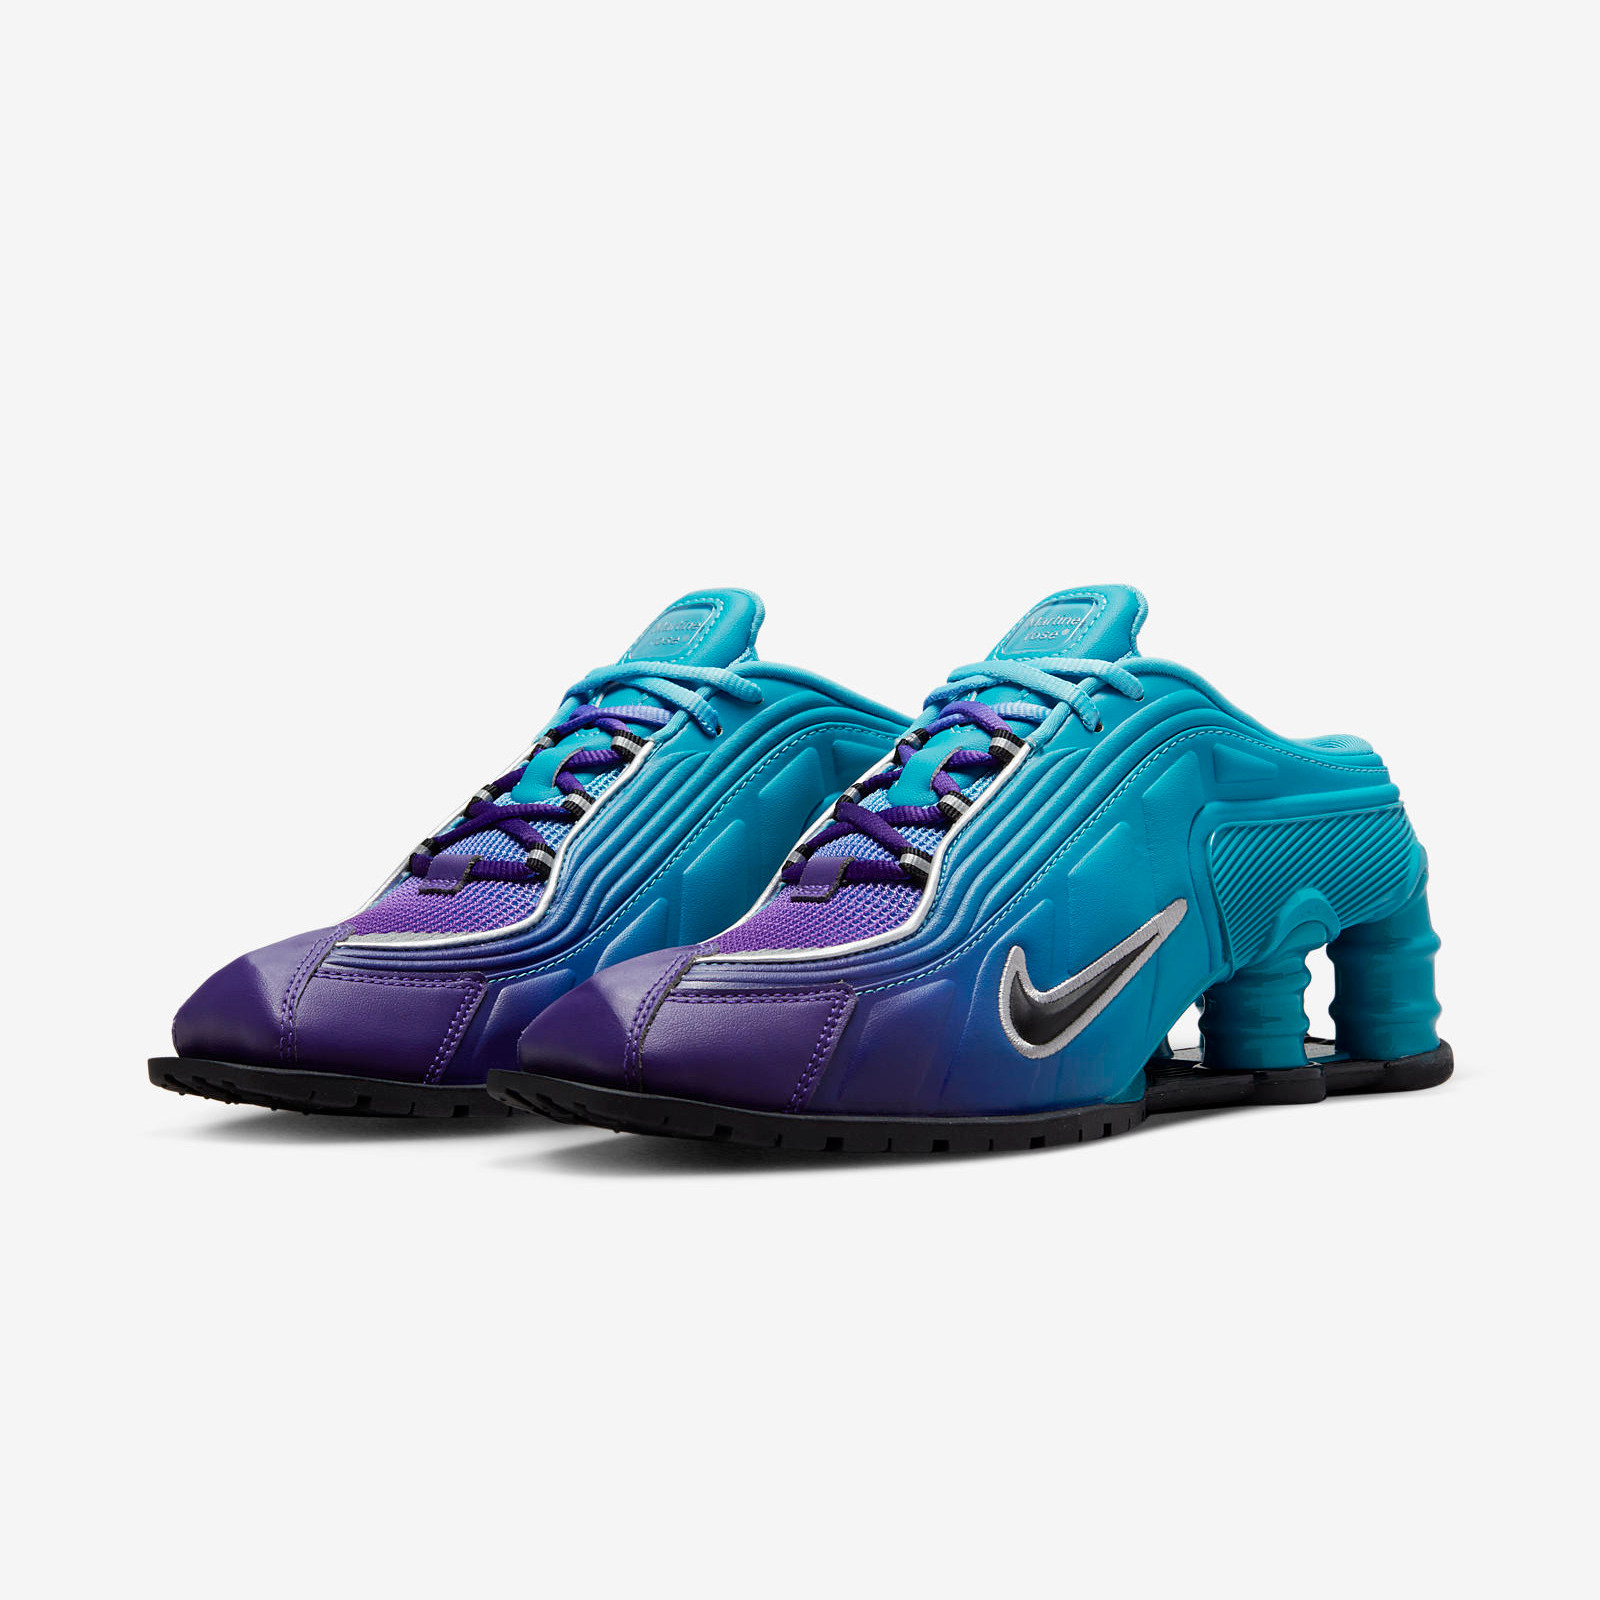 Nike Shox MR4 x Martine Rose
« Scuba Blue »